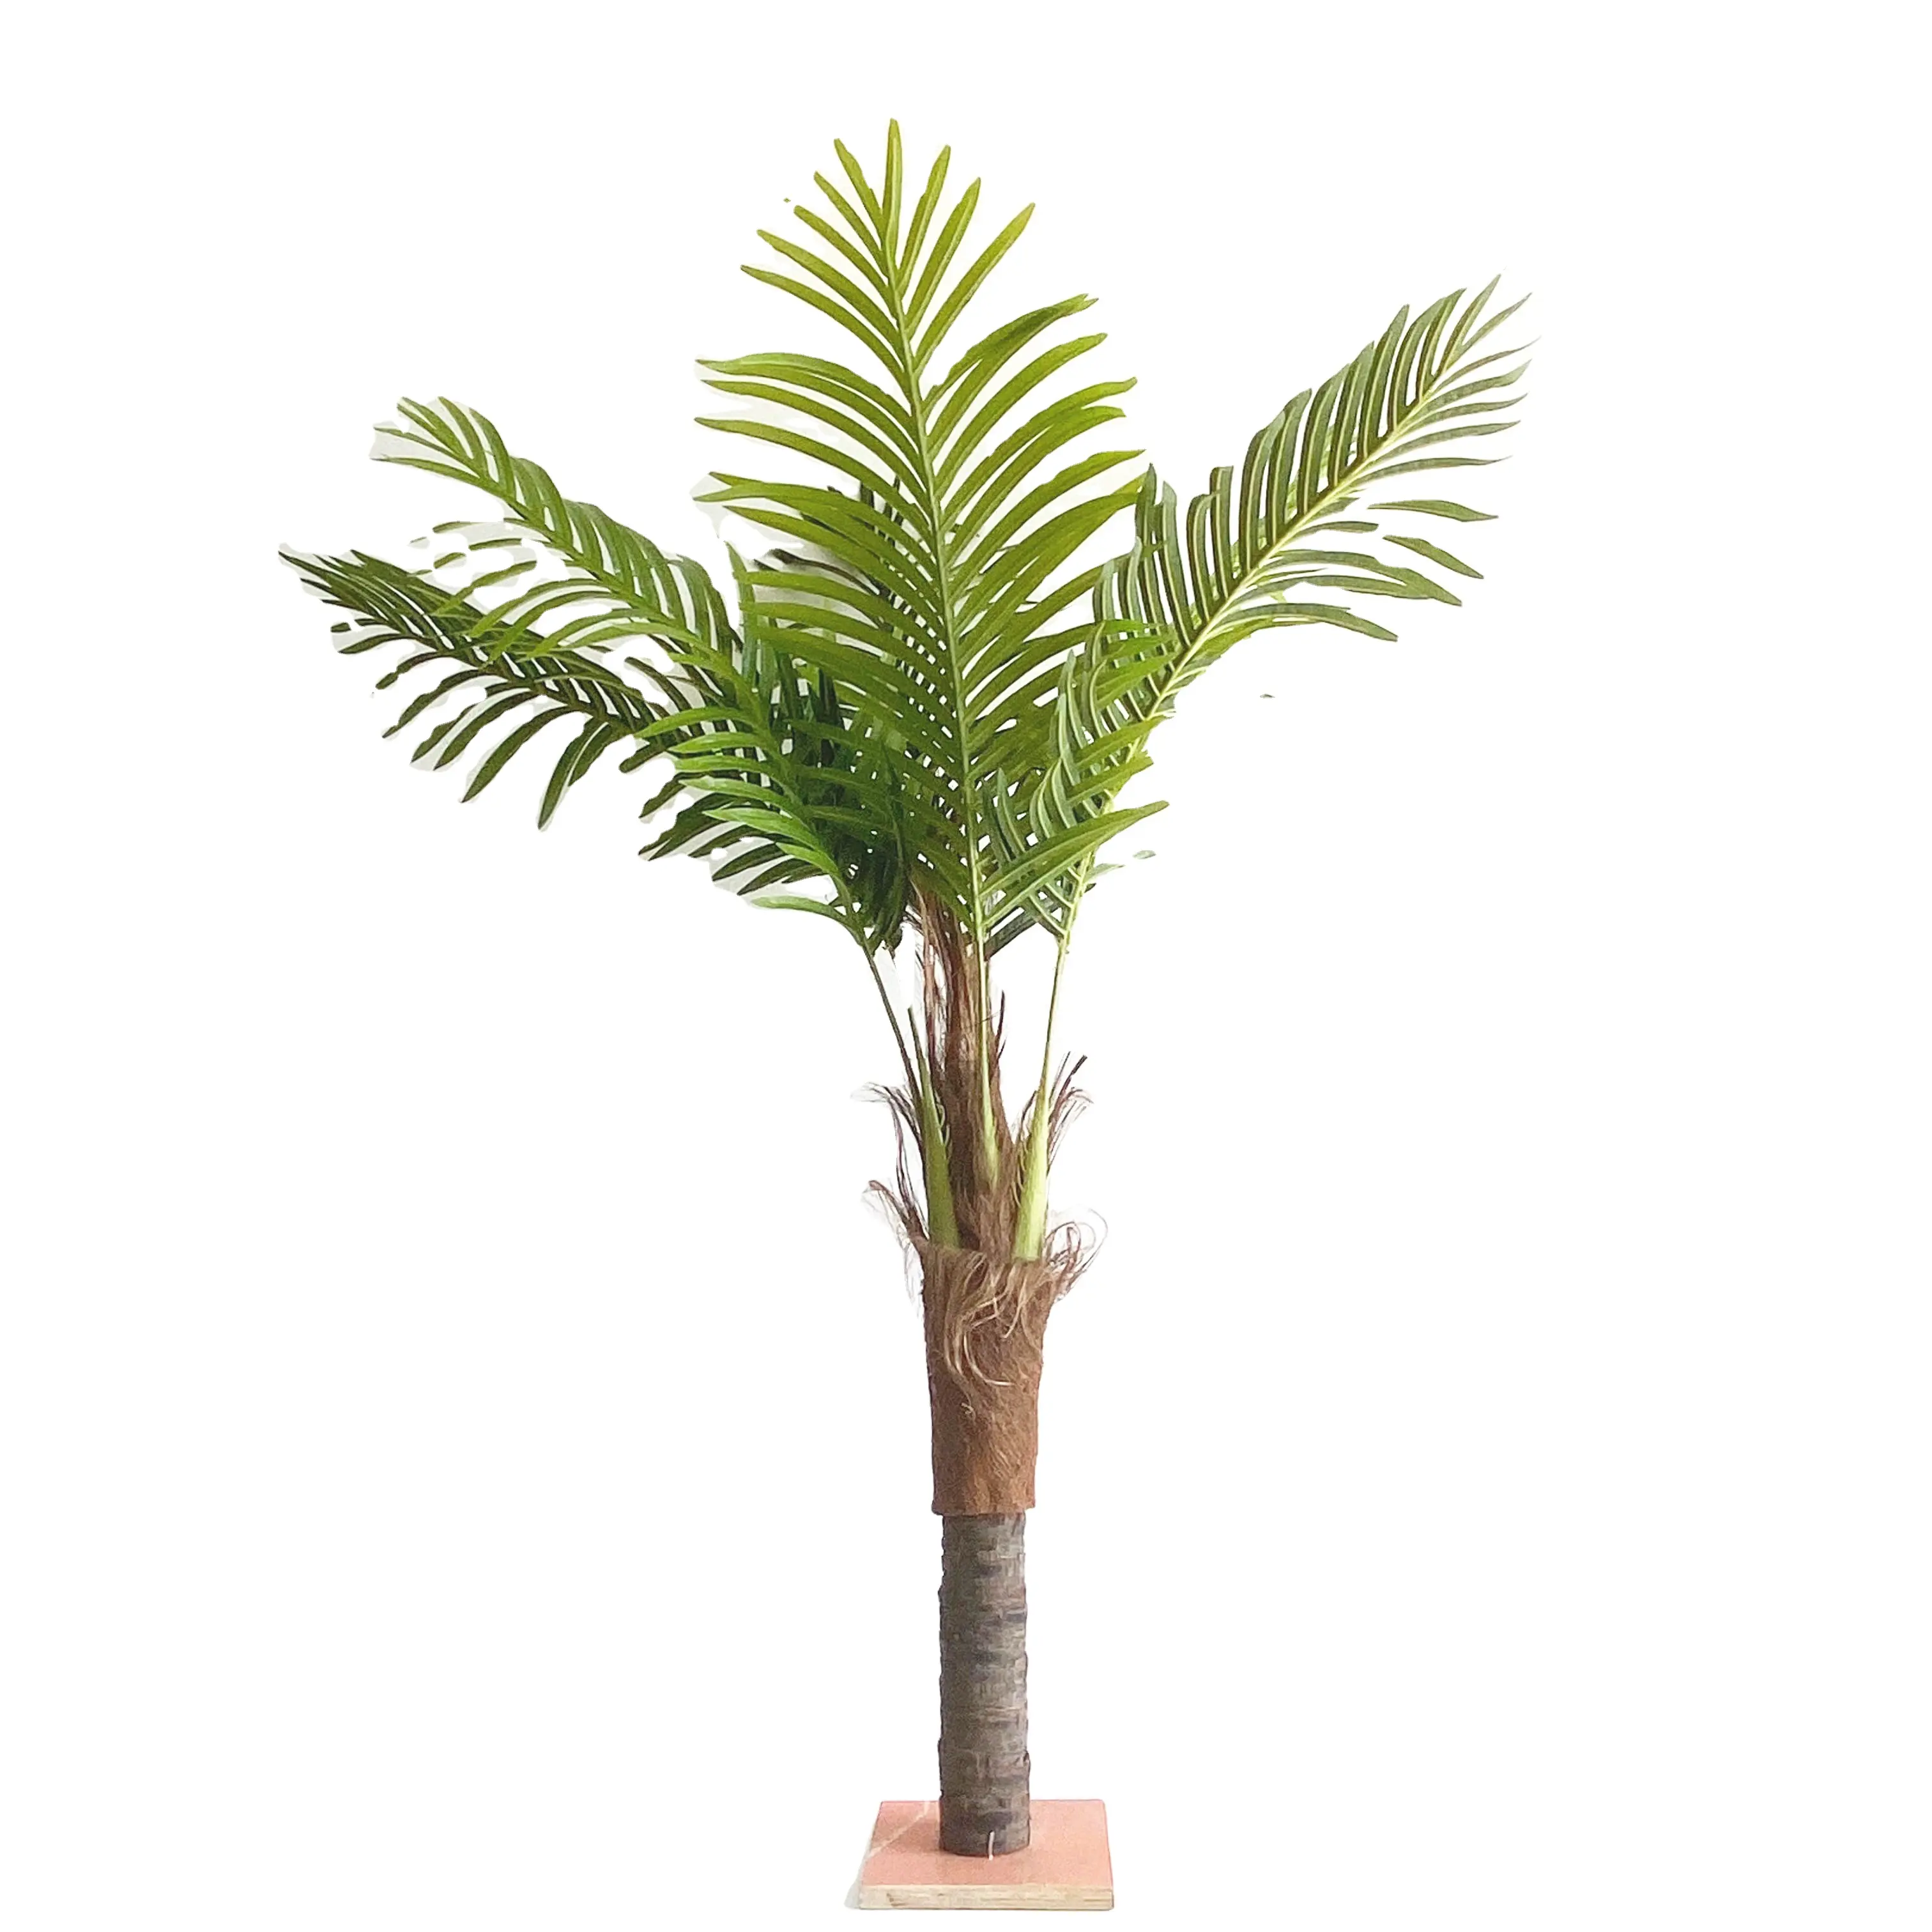 Fabbrica all'ingrosso di simulazione paesaggistica per interni all'aperto betel noce finta palma tropicale siam verde albero di cocco decorazione di piante